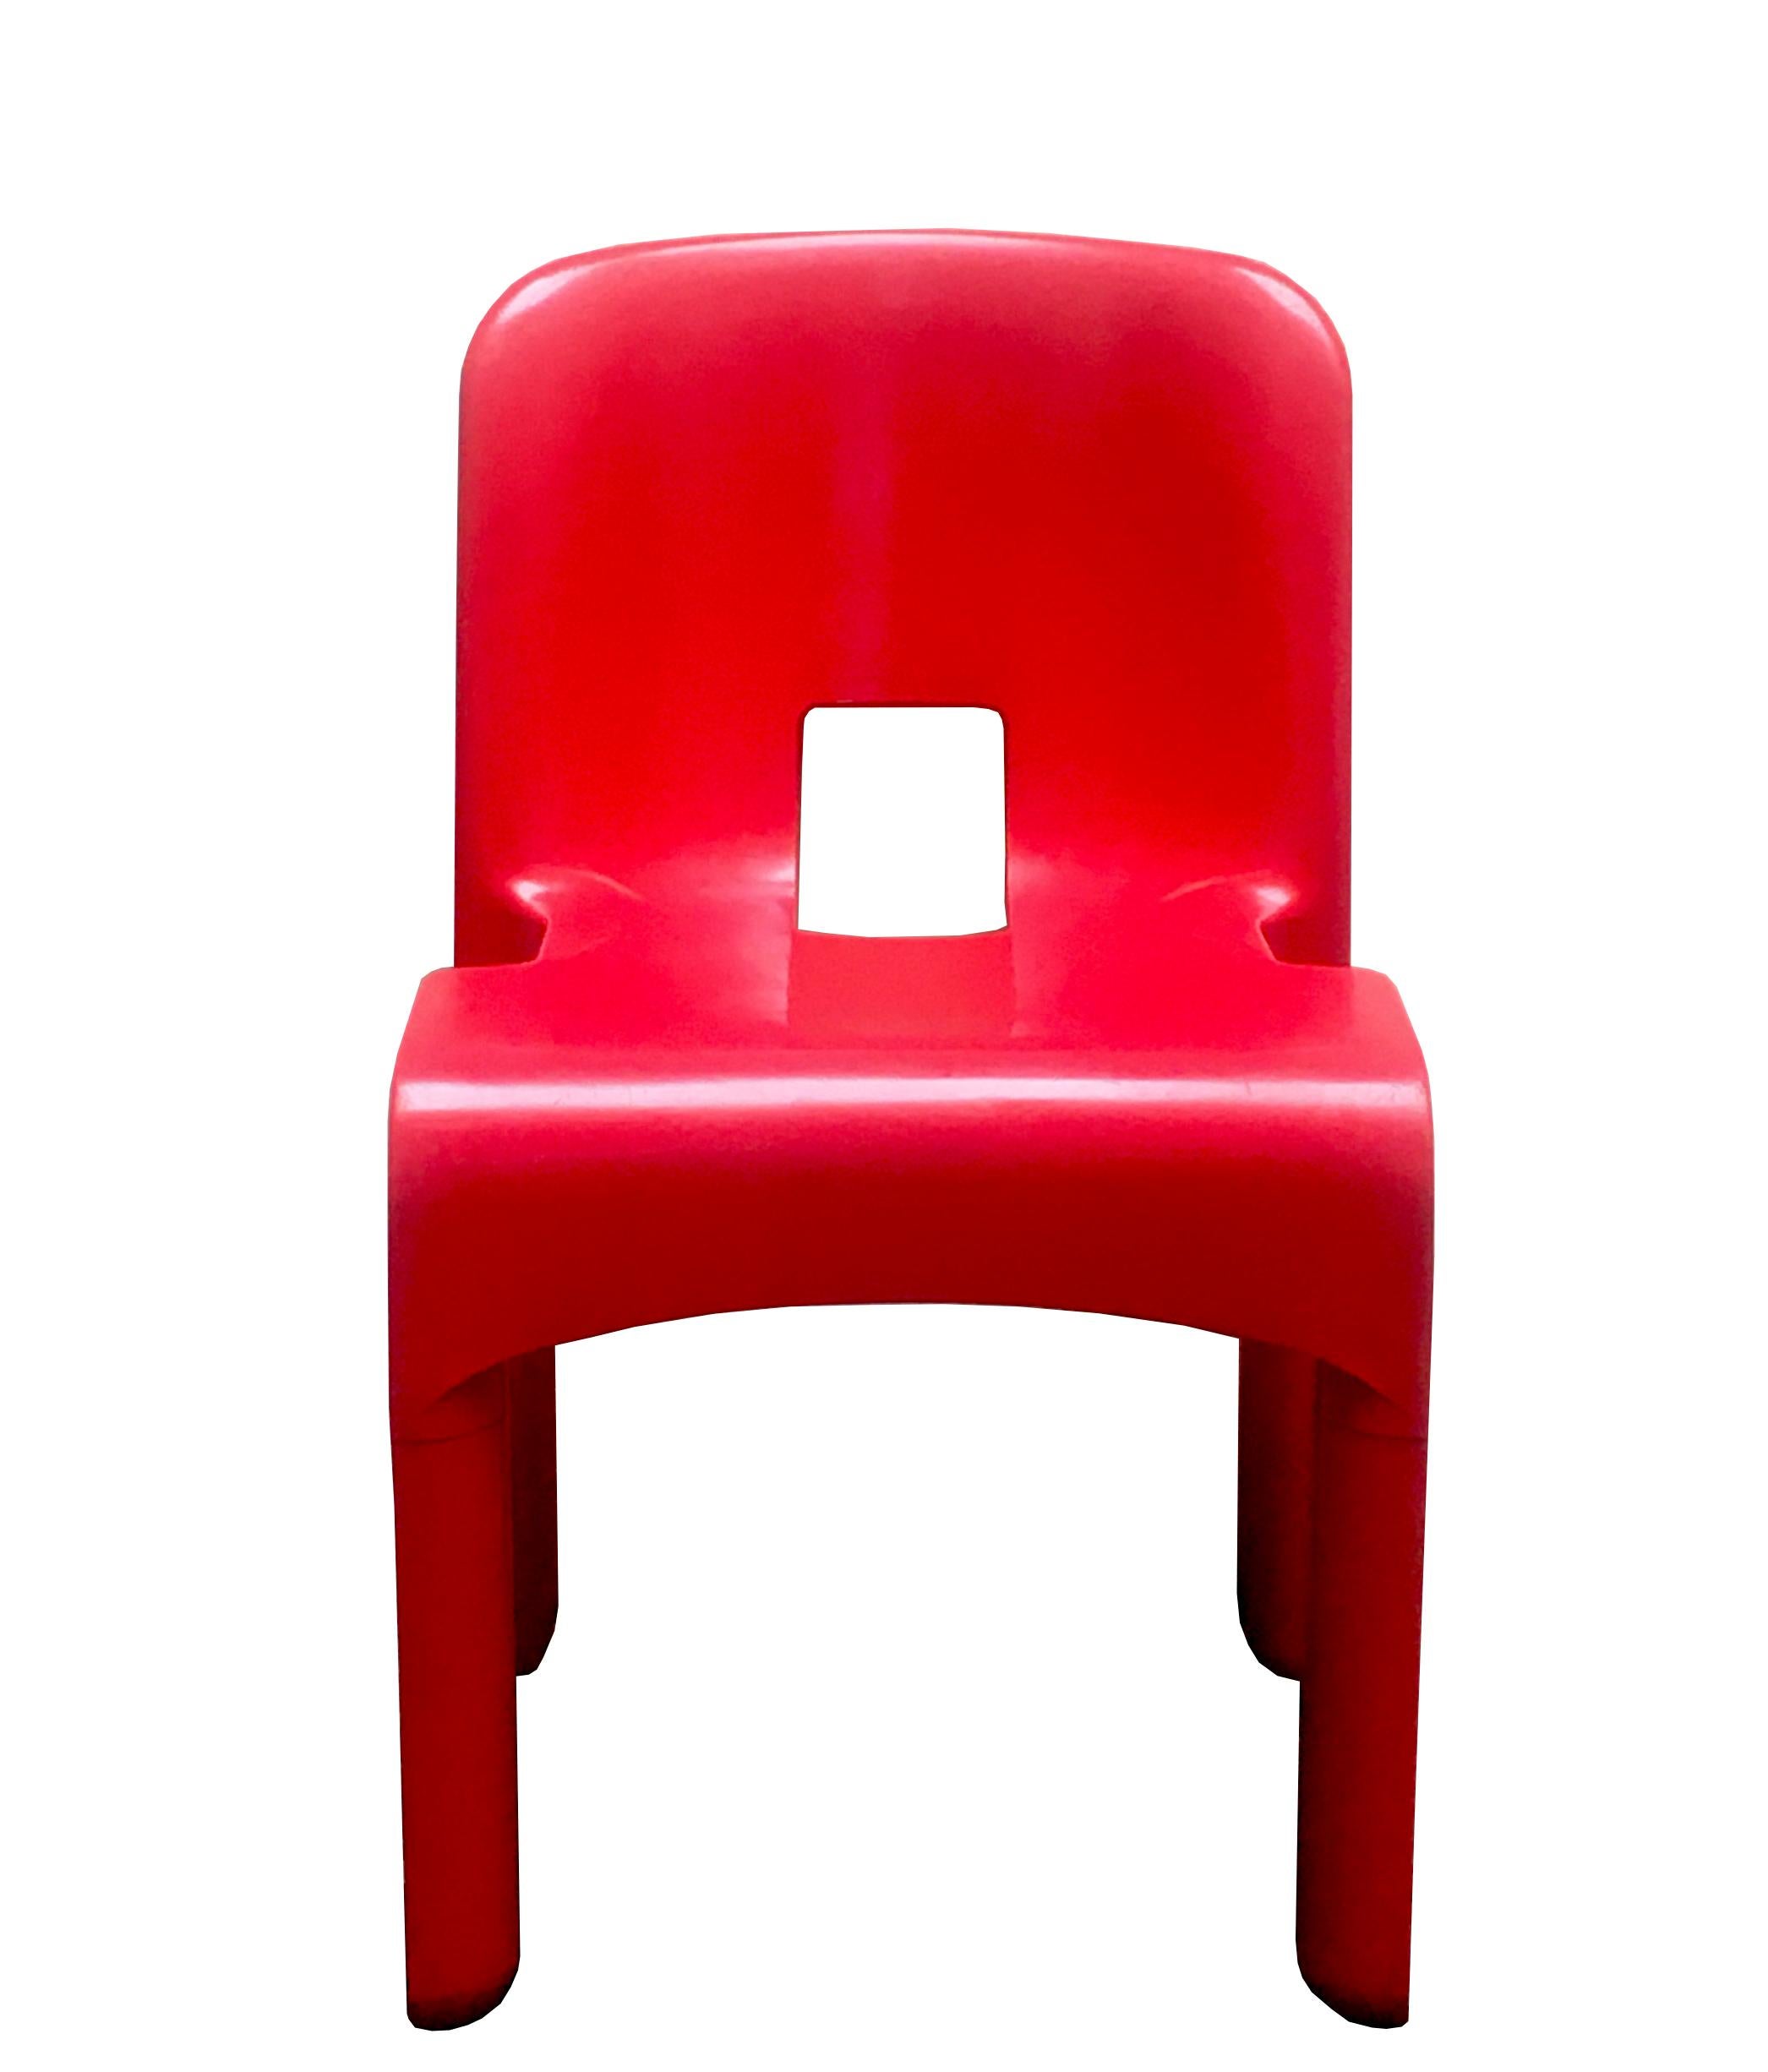 Chaise empilable Joe Colombo modèle 4867 Universale. Concepteur : Joe Colombo Fabricant : Kartell
Modèle : 4867 Chaise empilable Universale
Matériau : Plastique / caoutchouc
Période : 1967.